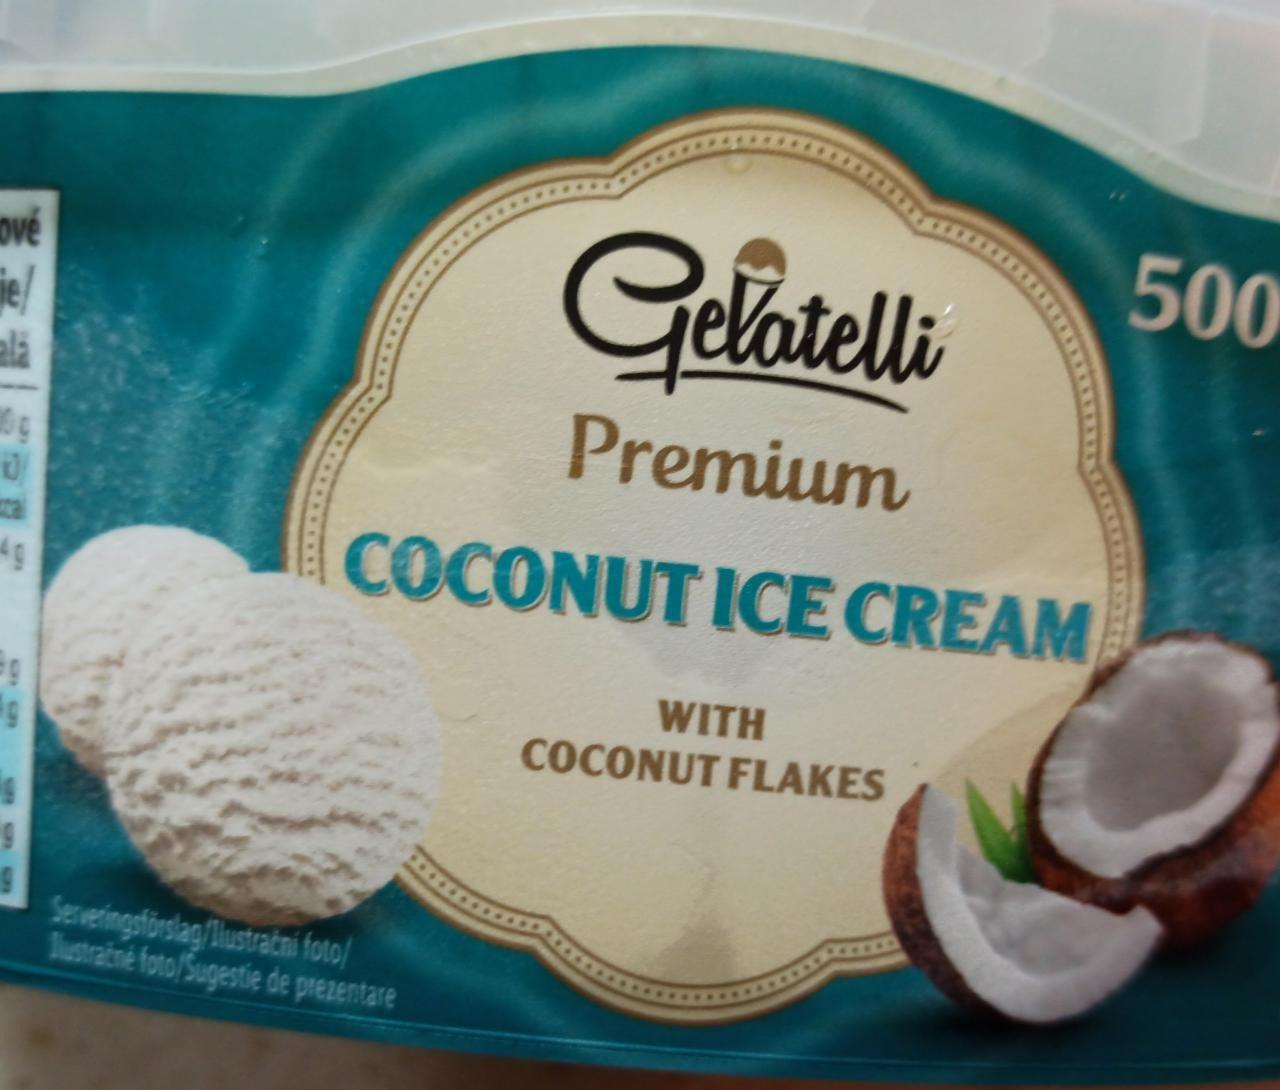 Fotografie - Premium Coconut ice cream with coconut flakes Galatelli